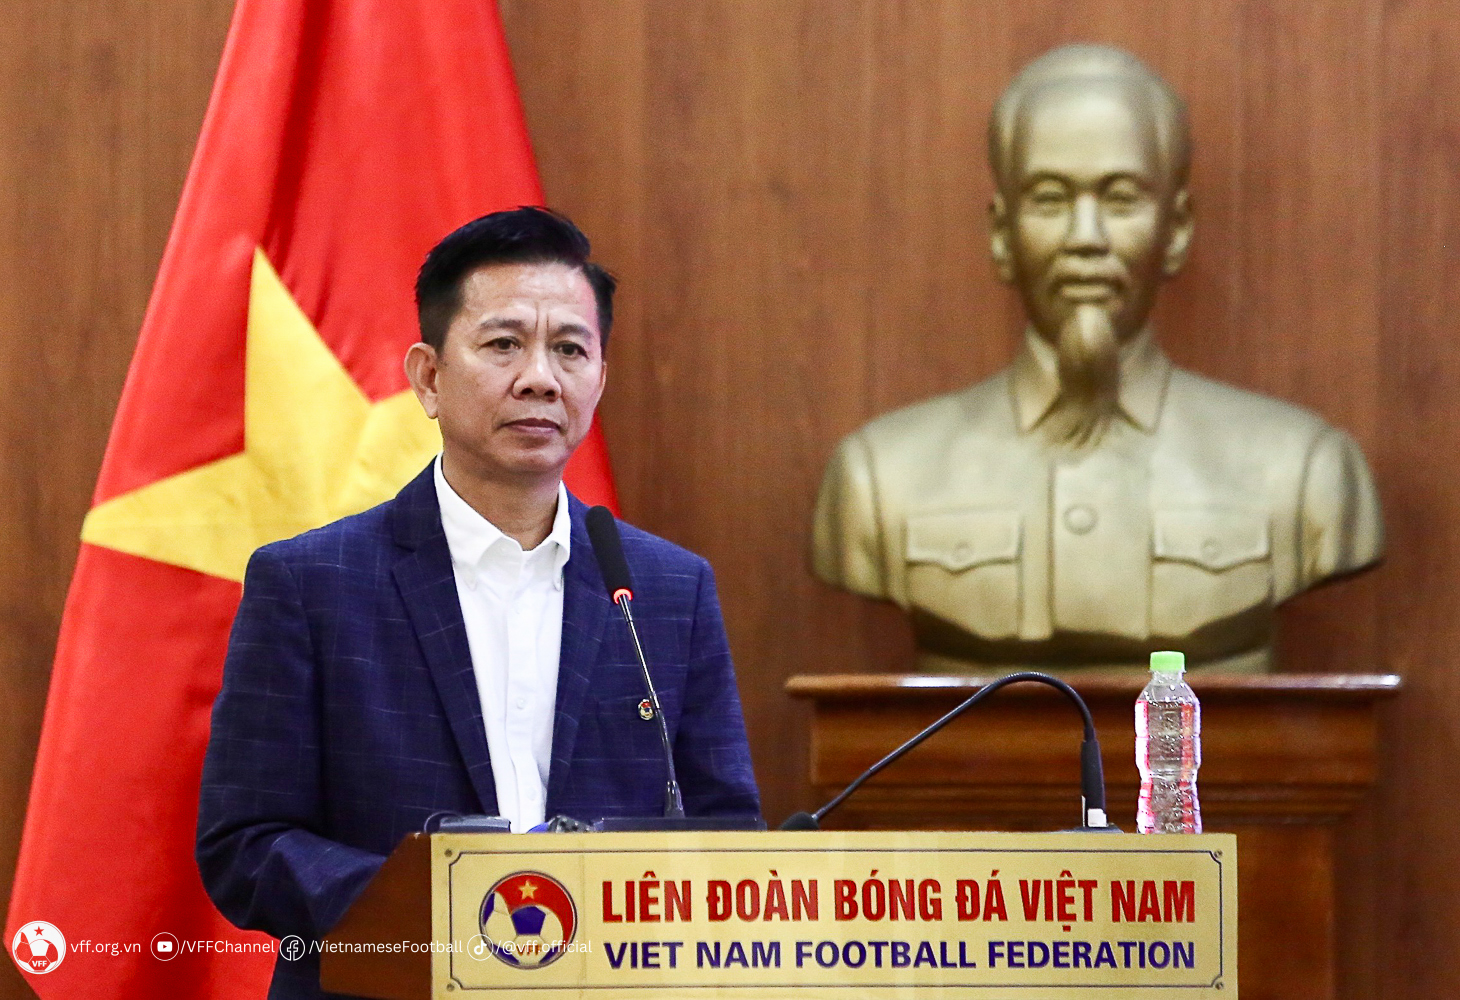 HLV Hoàng Anh Tuấn nêu rõ lối chơi của U23 Việt Nam - Bóng Đá